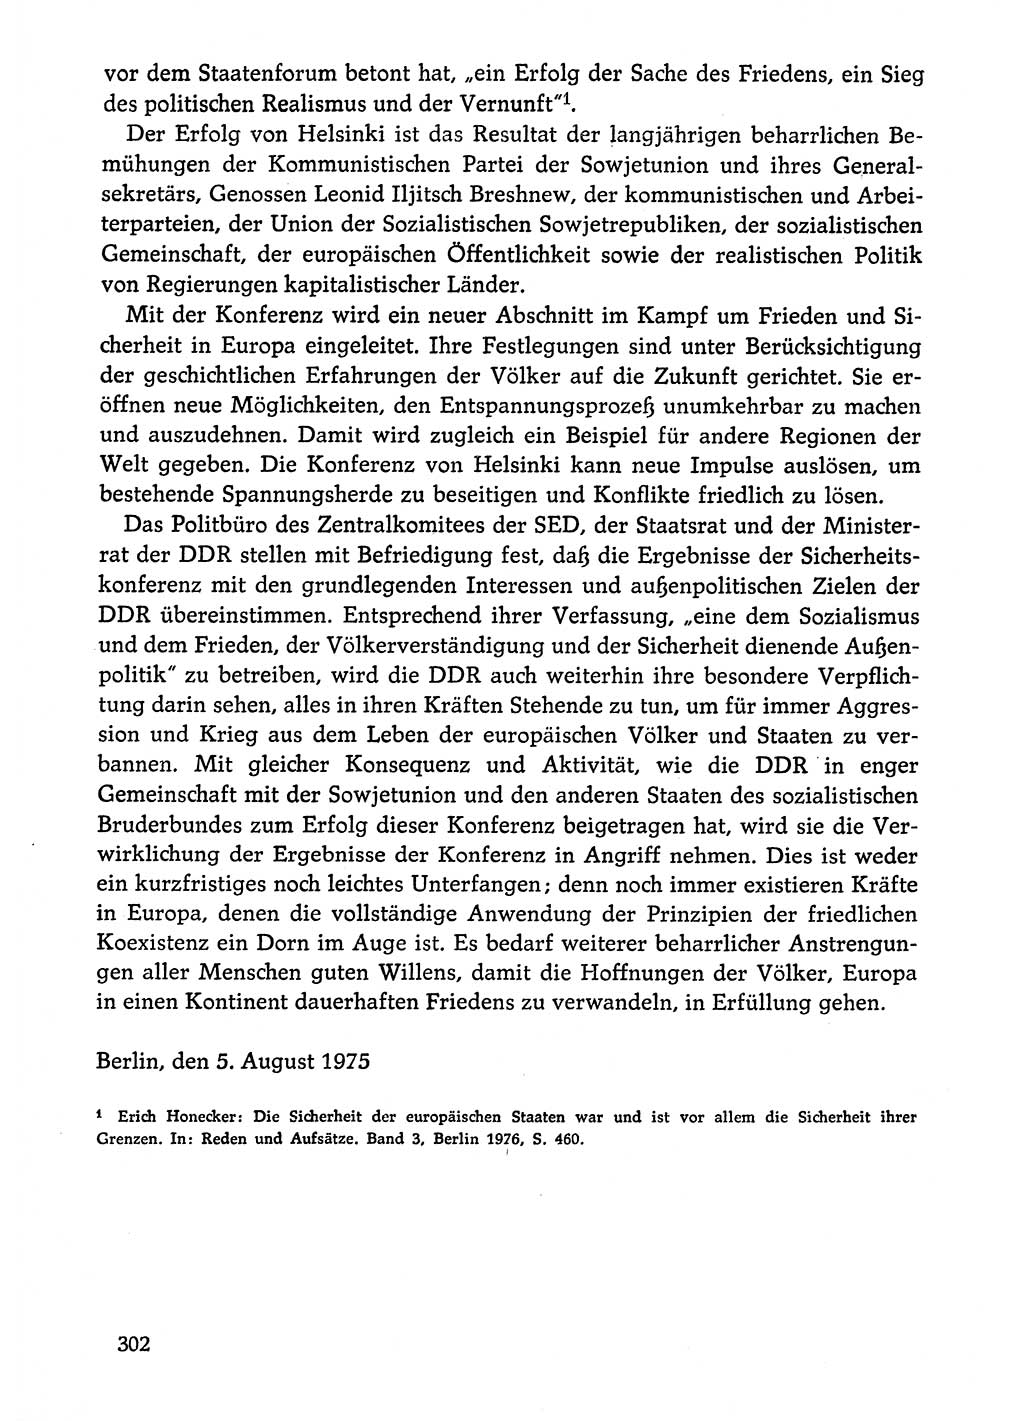 Dokumente der Sozialistischen Einheitspartei Deutschlands (SED) [Deutsche Demokratische Republik (DDR)] 1974-1975, Seite 302 (Dok. SED DDR 1978, Bd. ⅩⅤ, S. 302)